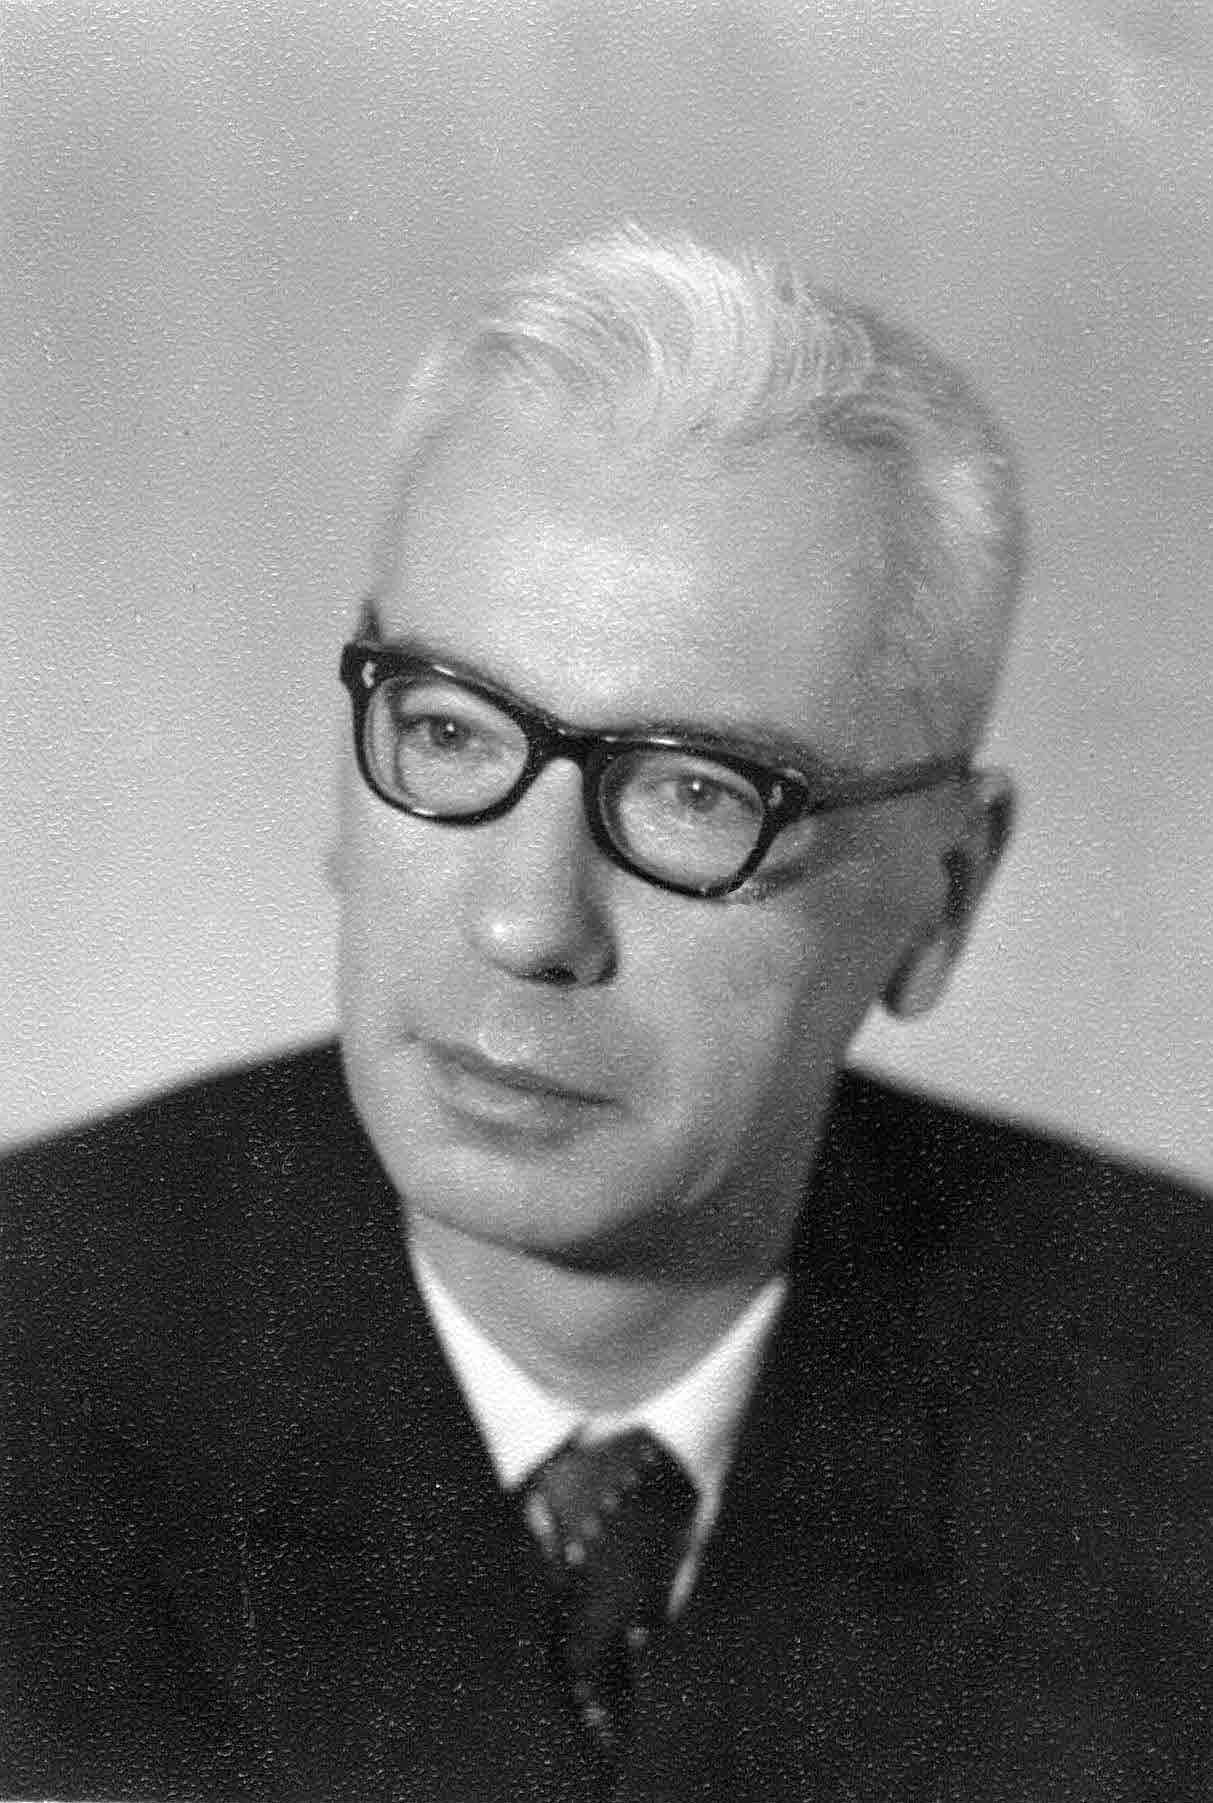 S.M.Lozinskii in 1974